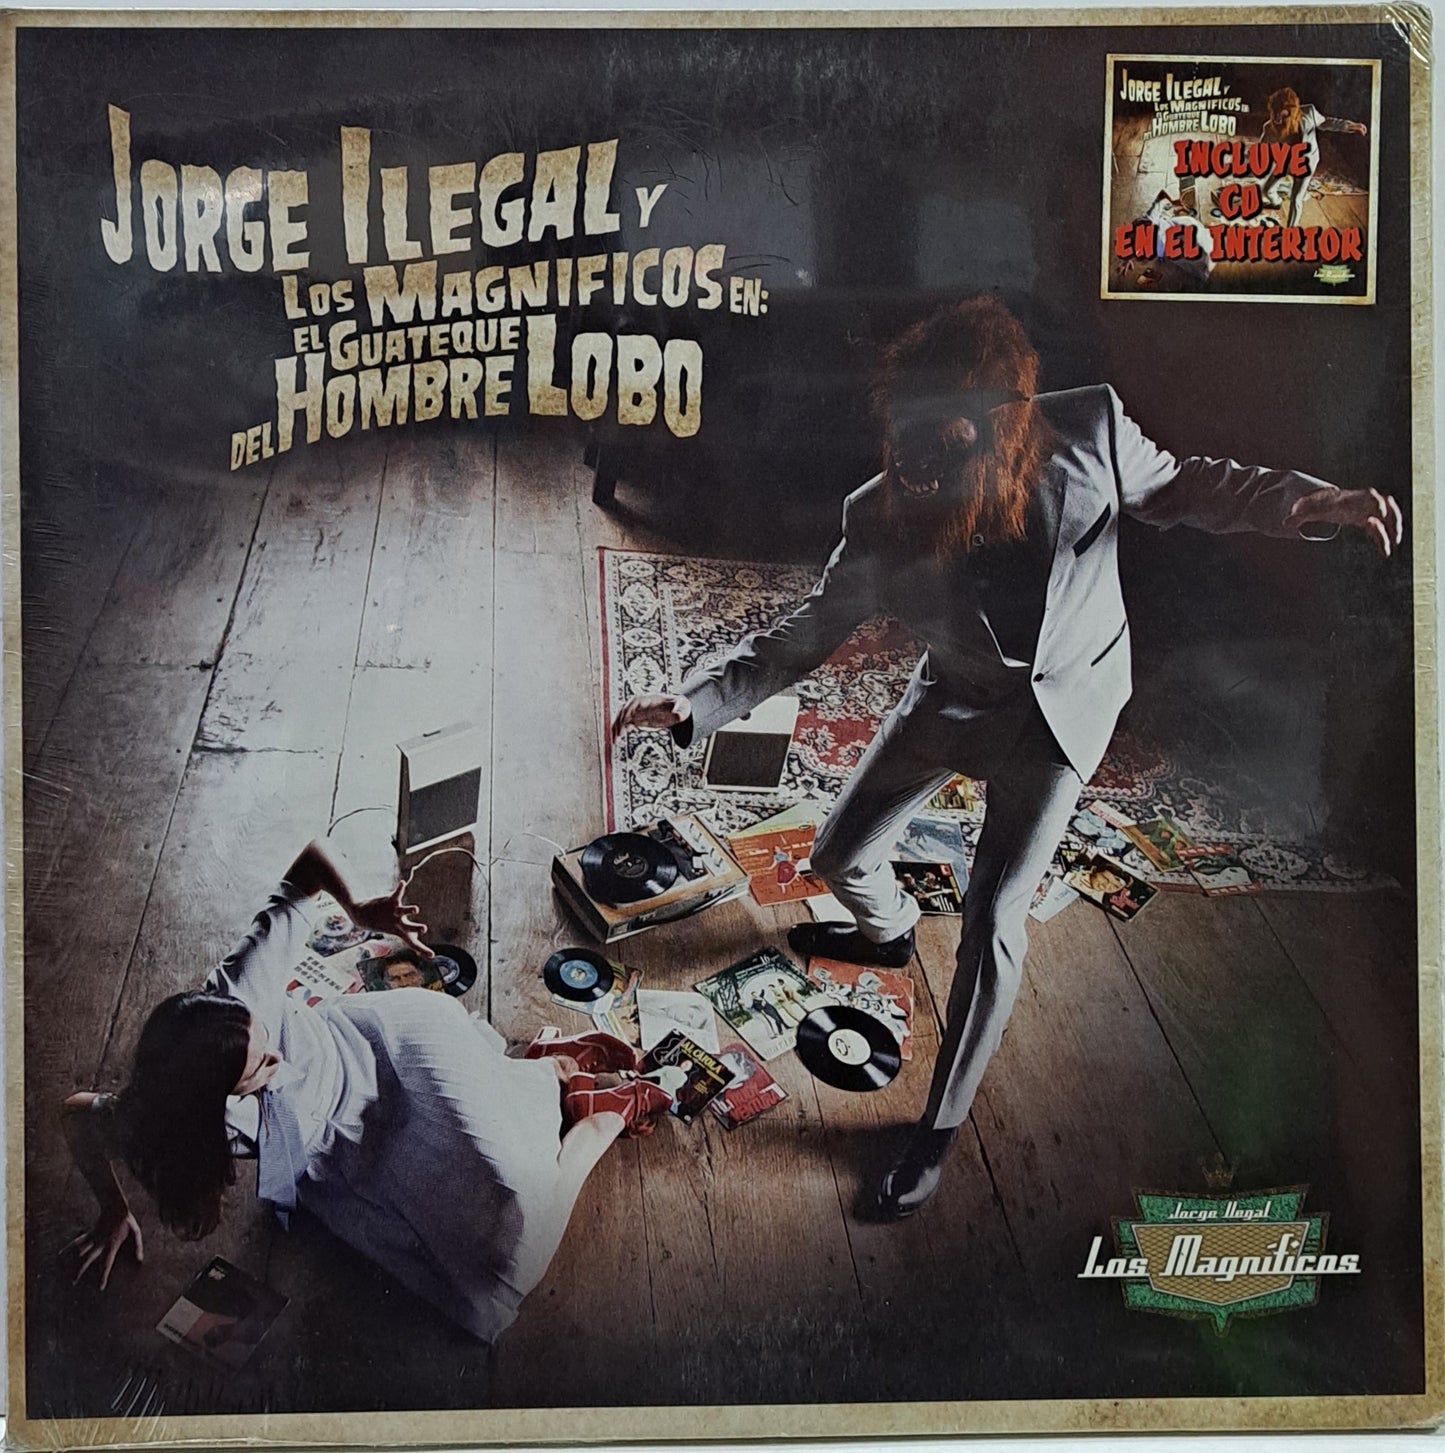 JORGE ILEGAL Y LOS MAGNIFICOS - EN EL GUATEQUE  LP